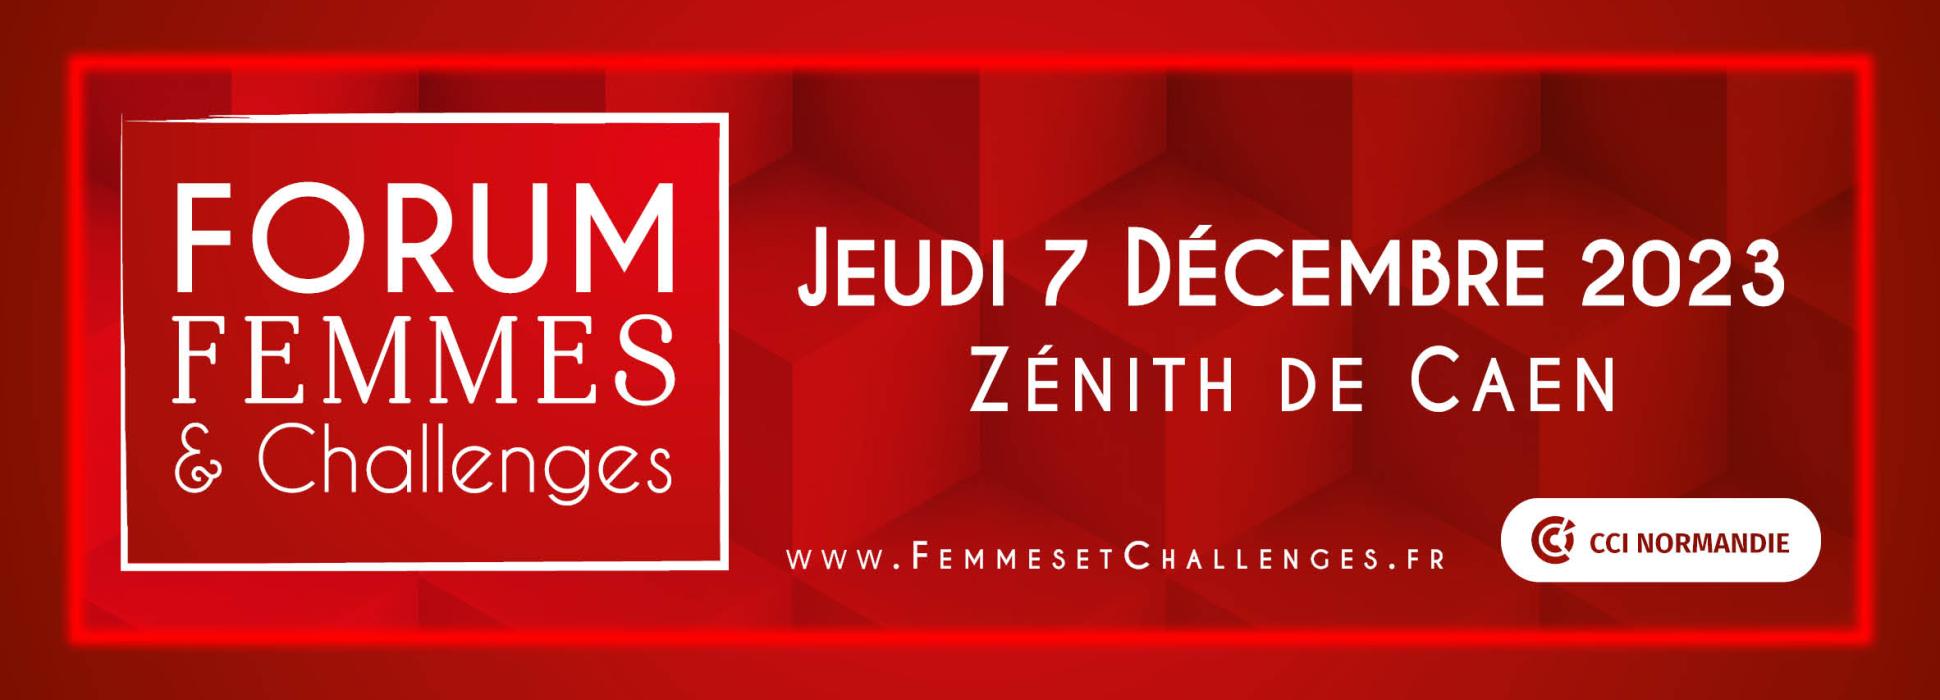 Le Forum Femmes & Challenges se tiendra à Caen le 7 décembre 2023